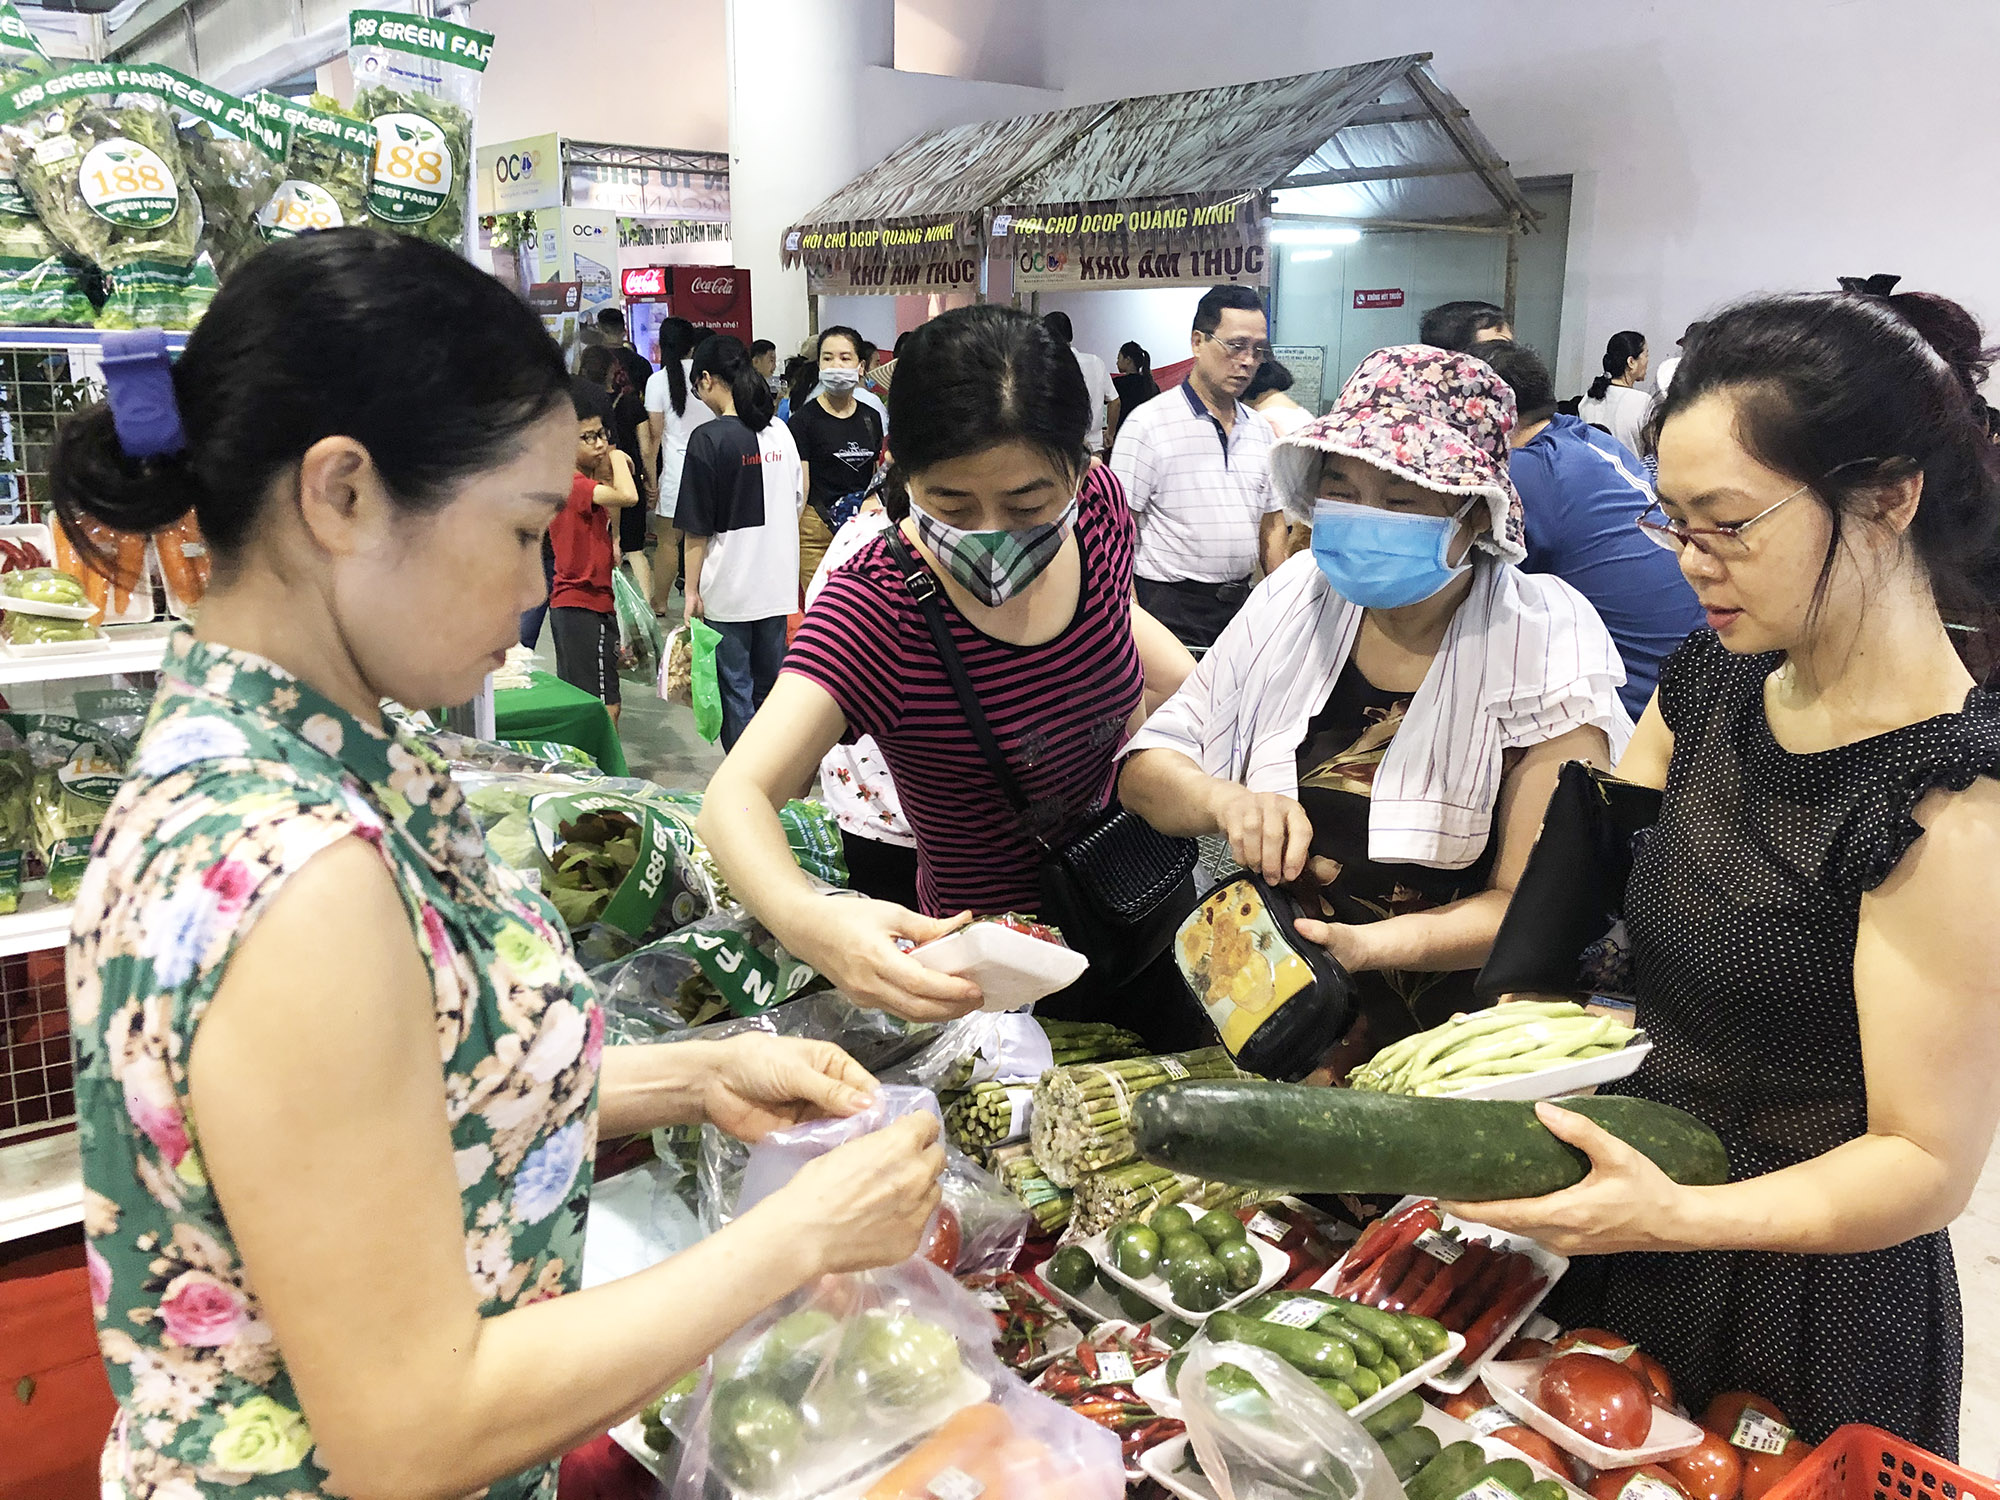 Hội chợ OCOP Quảng Ninh - Hè 2020 với chủ đề “Thương hiệu OCOP Quảng Ninh - Chào đón Mùa du lịch Hạ Long 2020” là một trong những hoạt động kích cầu du lịch.